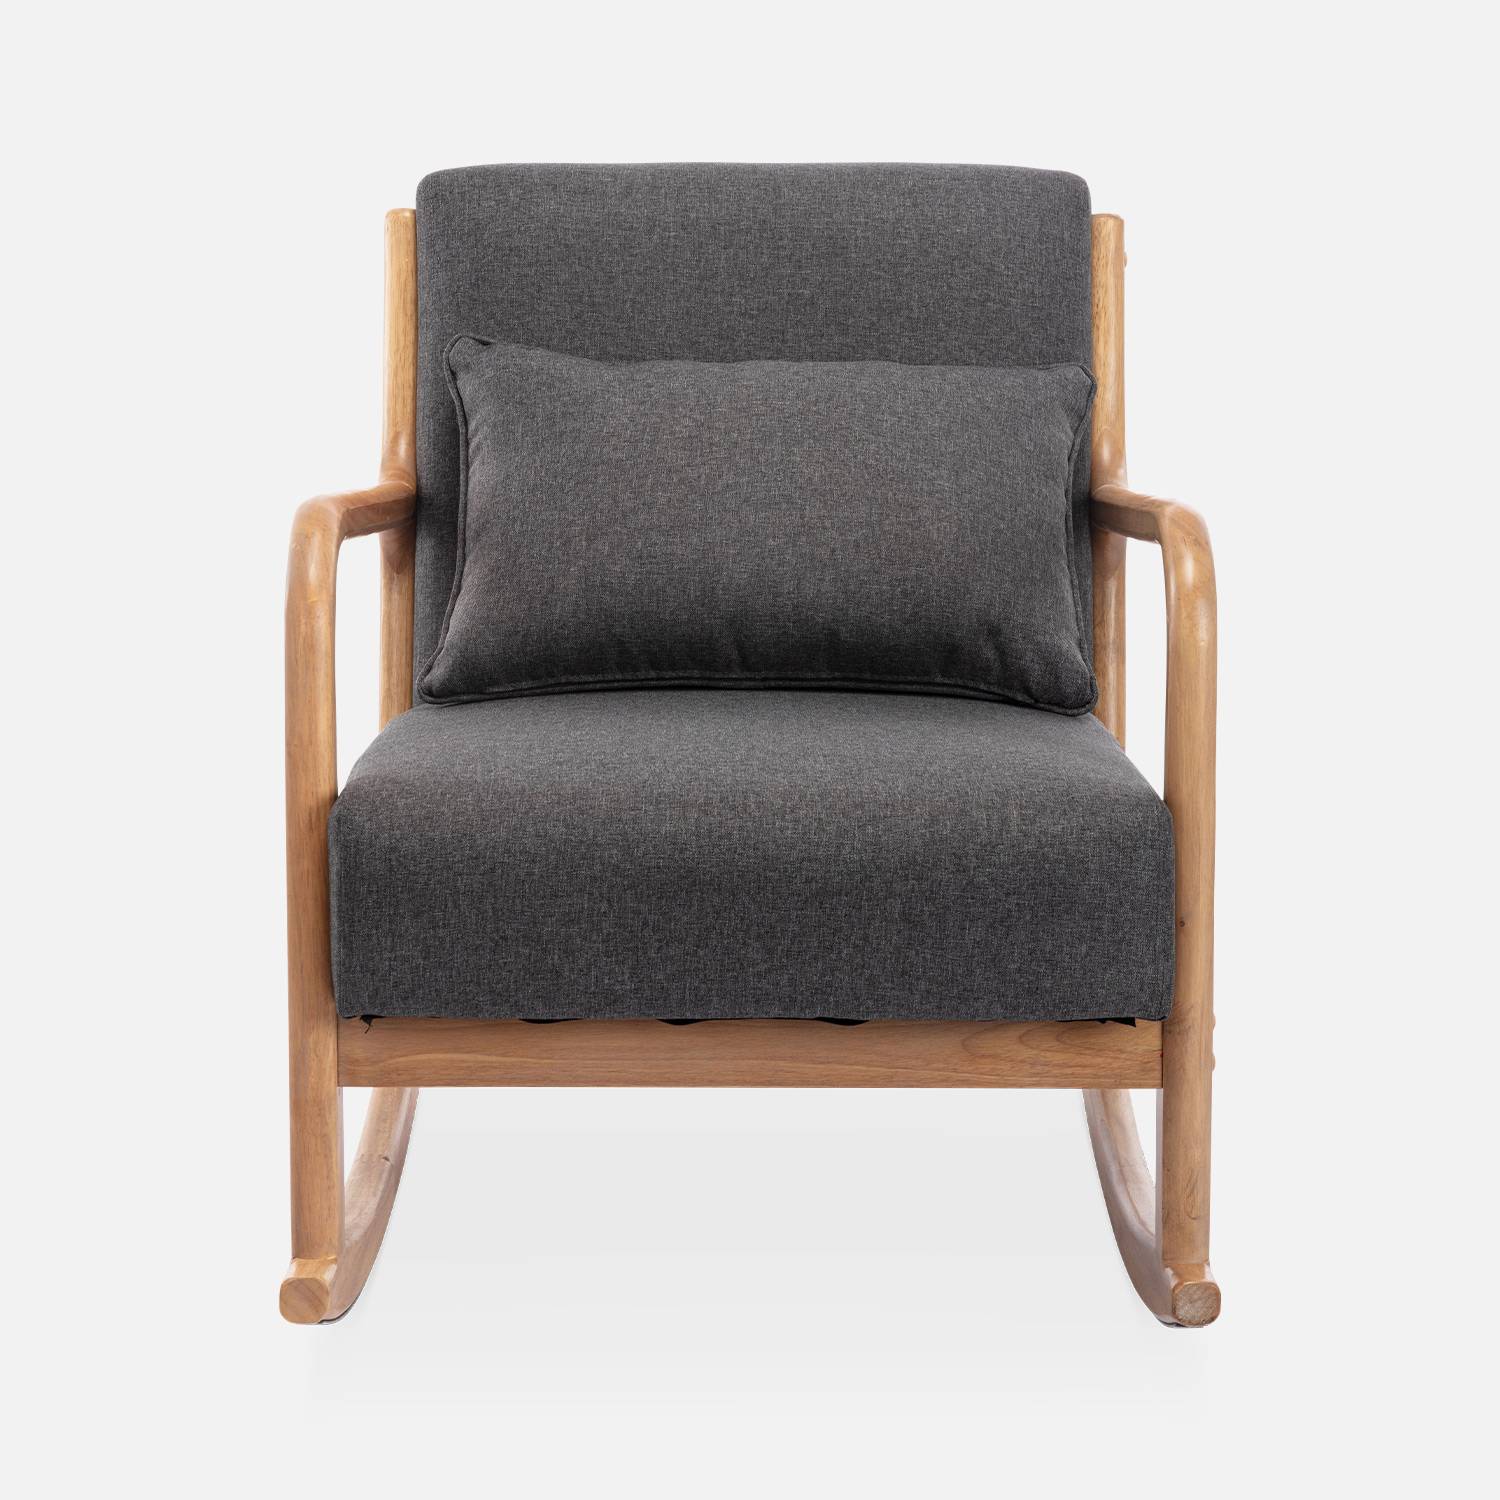 Fauteuil à bascule design en bois et tissu, 1 place, rocking chair scandinave, gris foncé Photo3